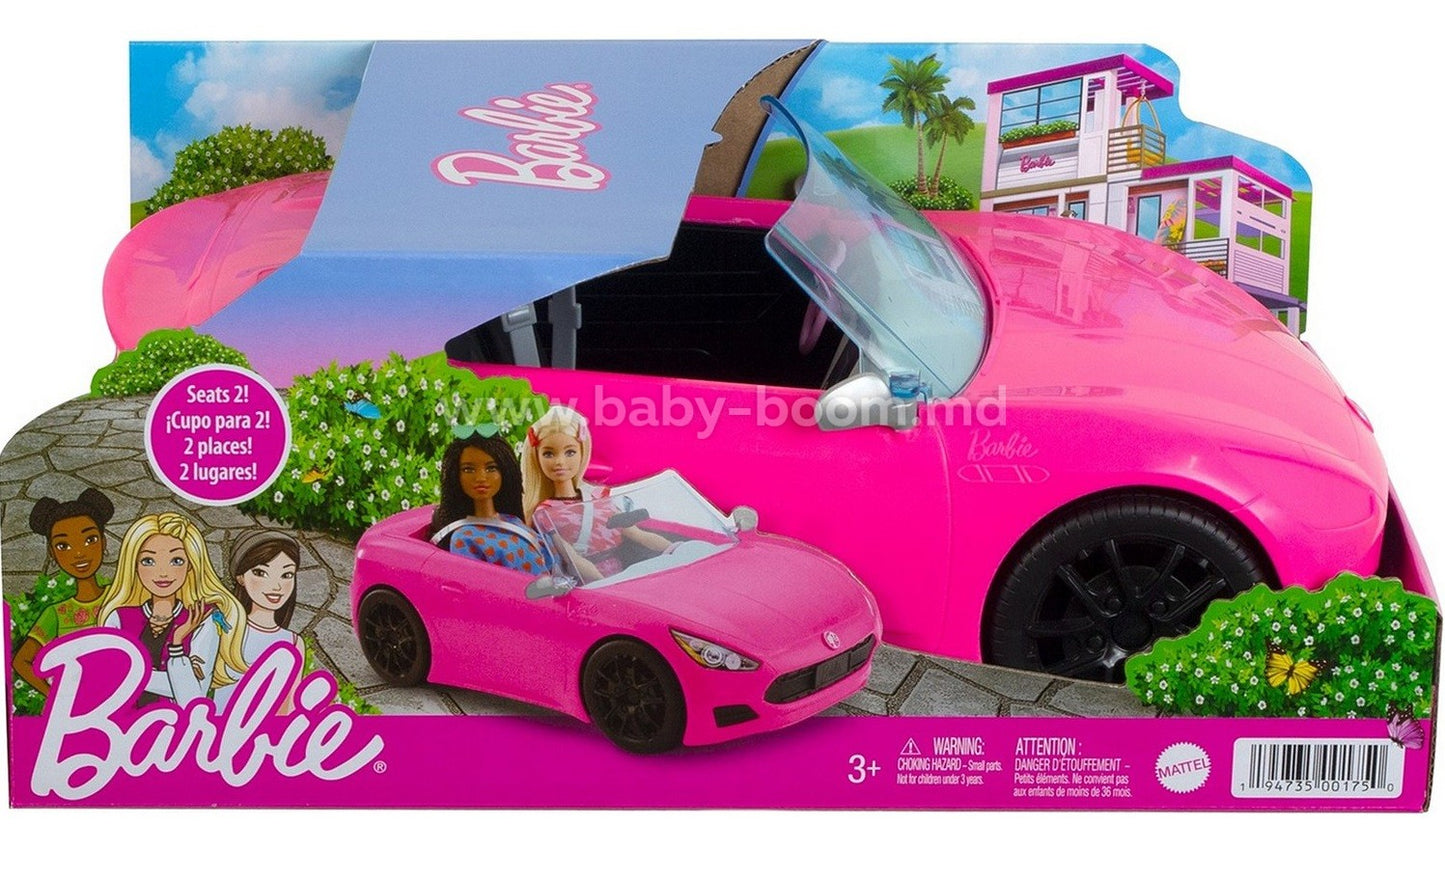 Masinuta de Jucarie, Barbie Convertible, 13.7 x 33 x 18.2 cm